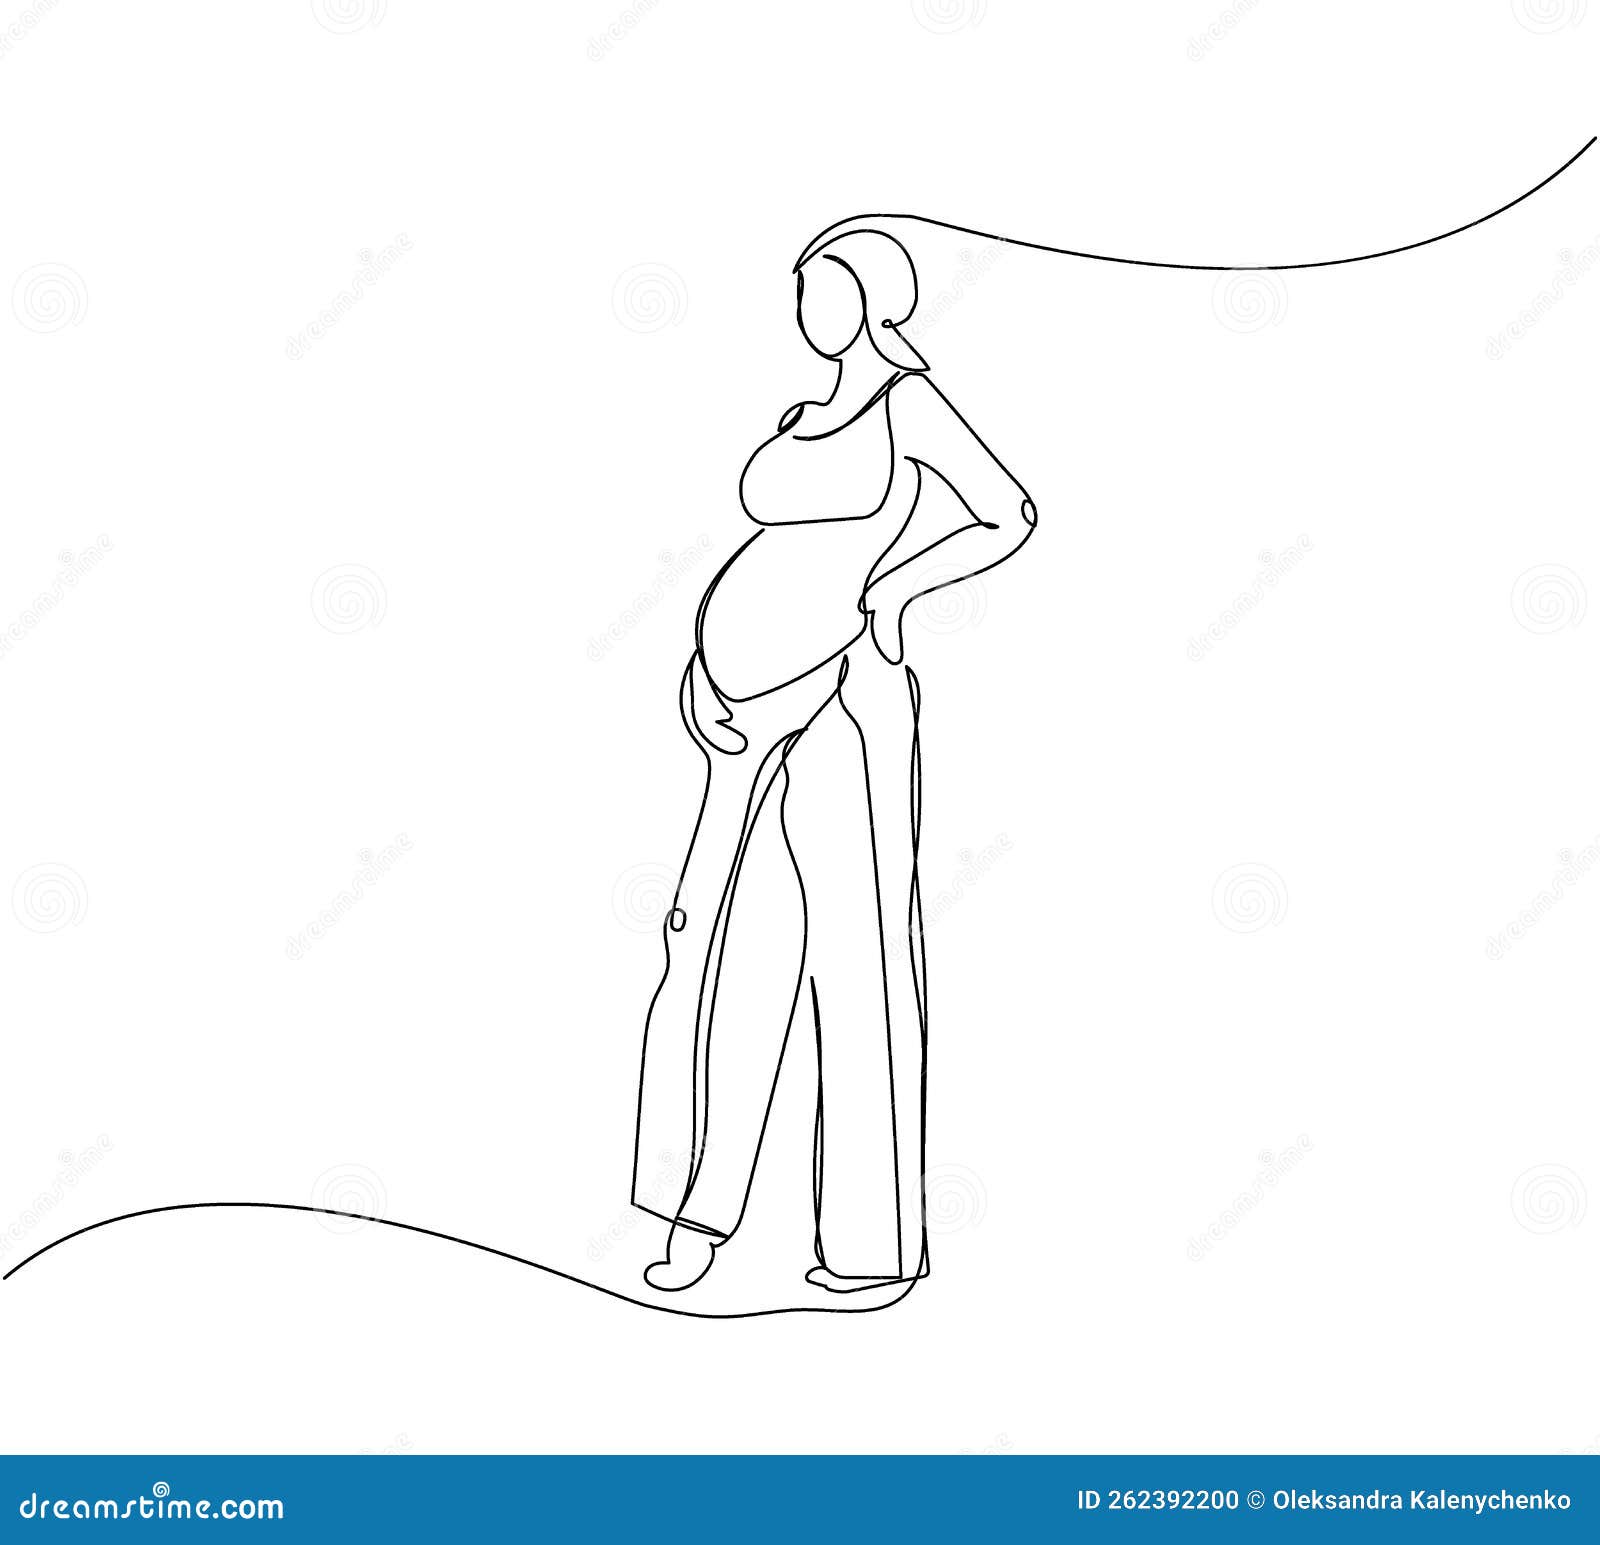 正常早期妊娠子宫超声所见（一） - 知乎